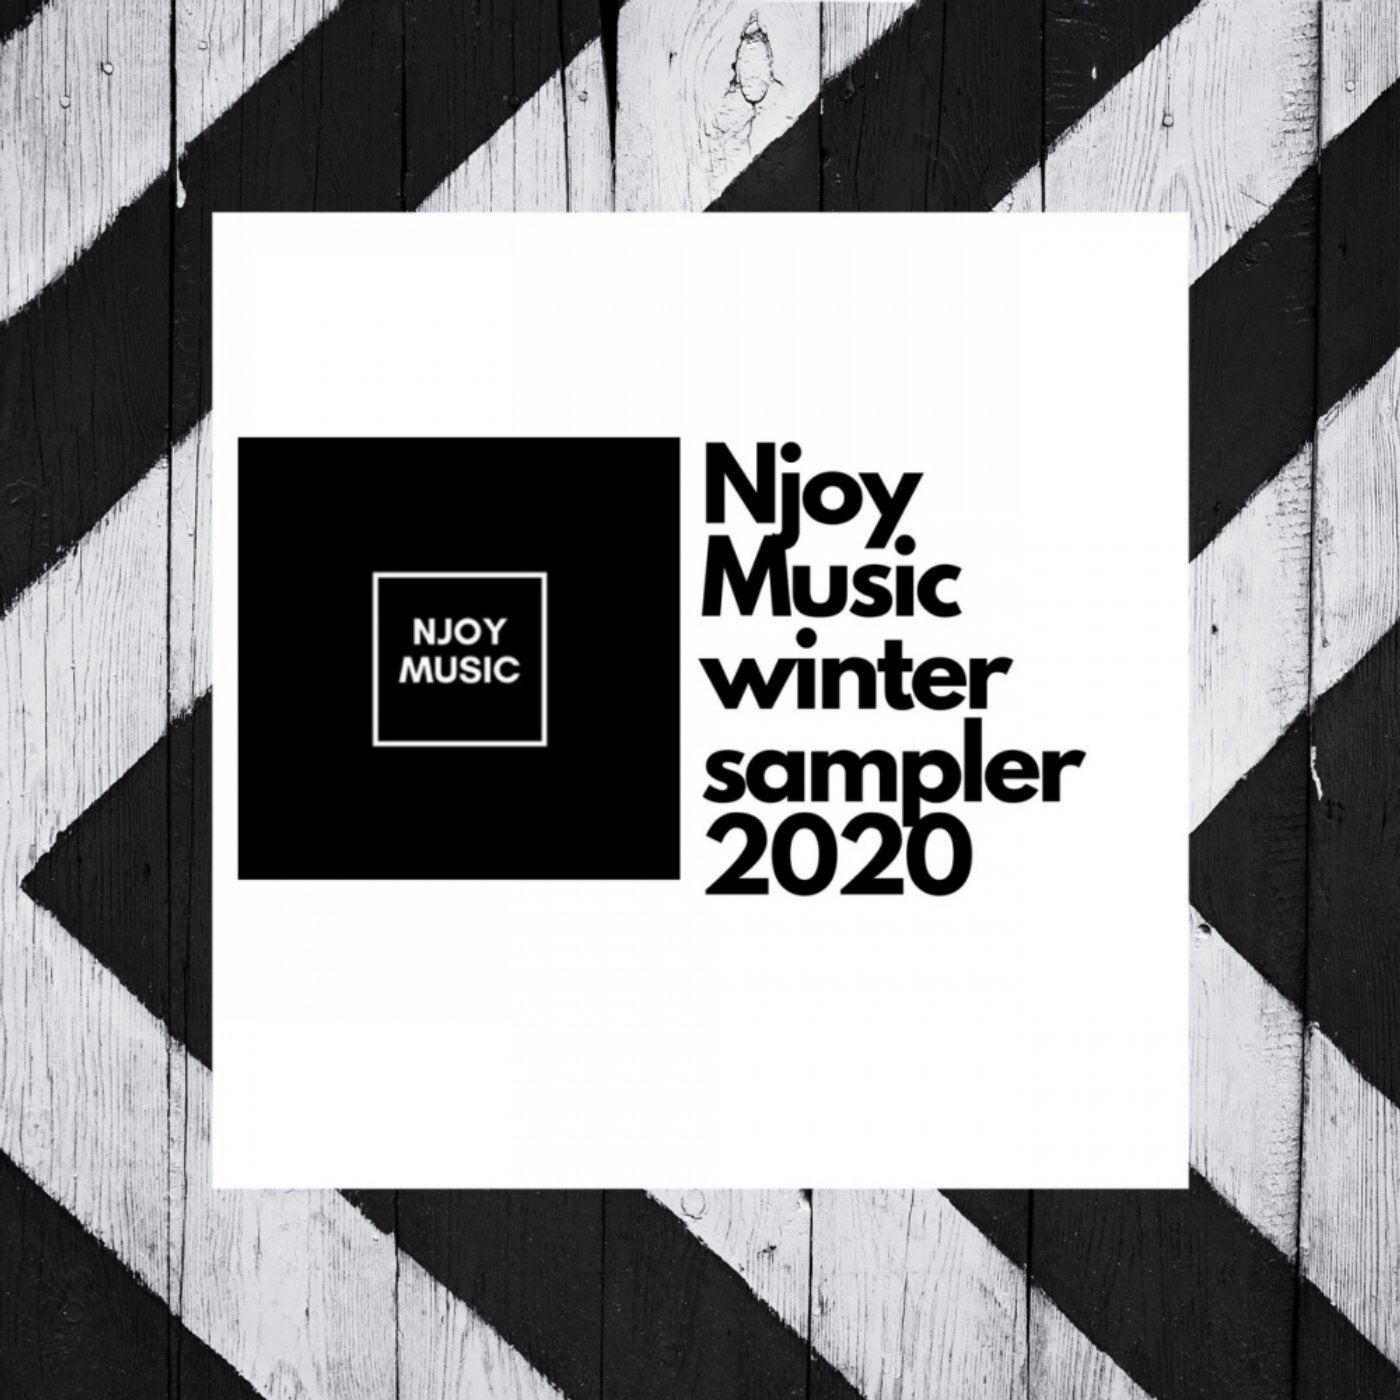 Njoy Music Winter Sampler 2020